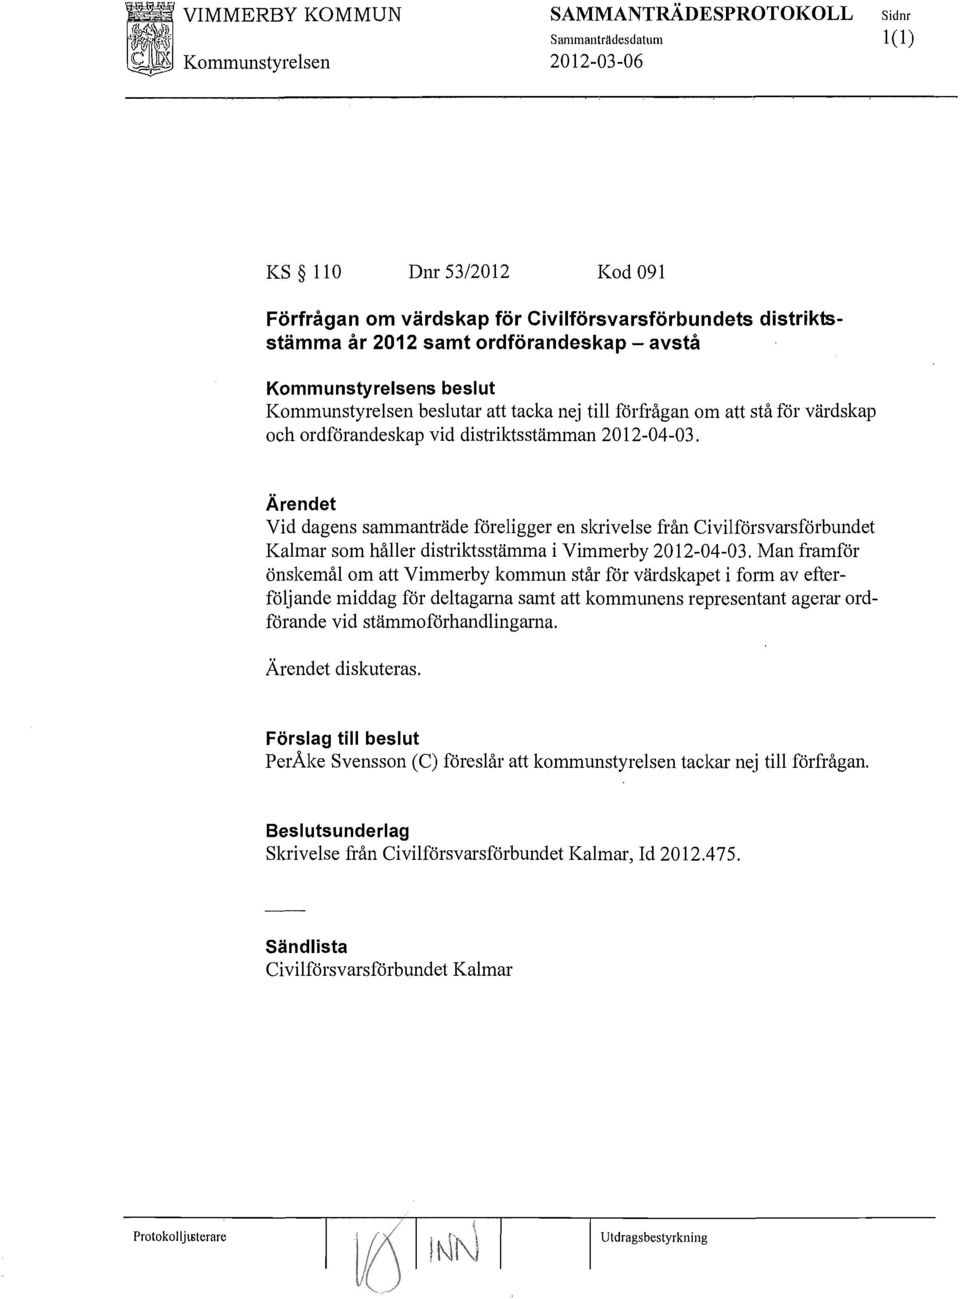 Vid dagens sammanträde föreligger en skrivelse från Civilförsvarsförbundet Kalmar som håller distriktsstämma i Vimmerby 2012-04-03.